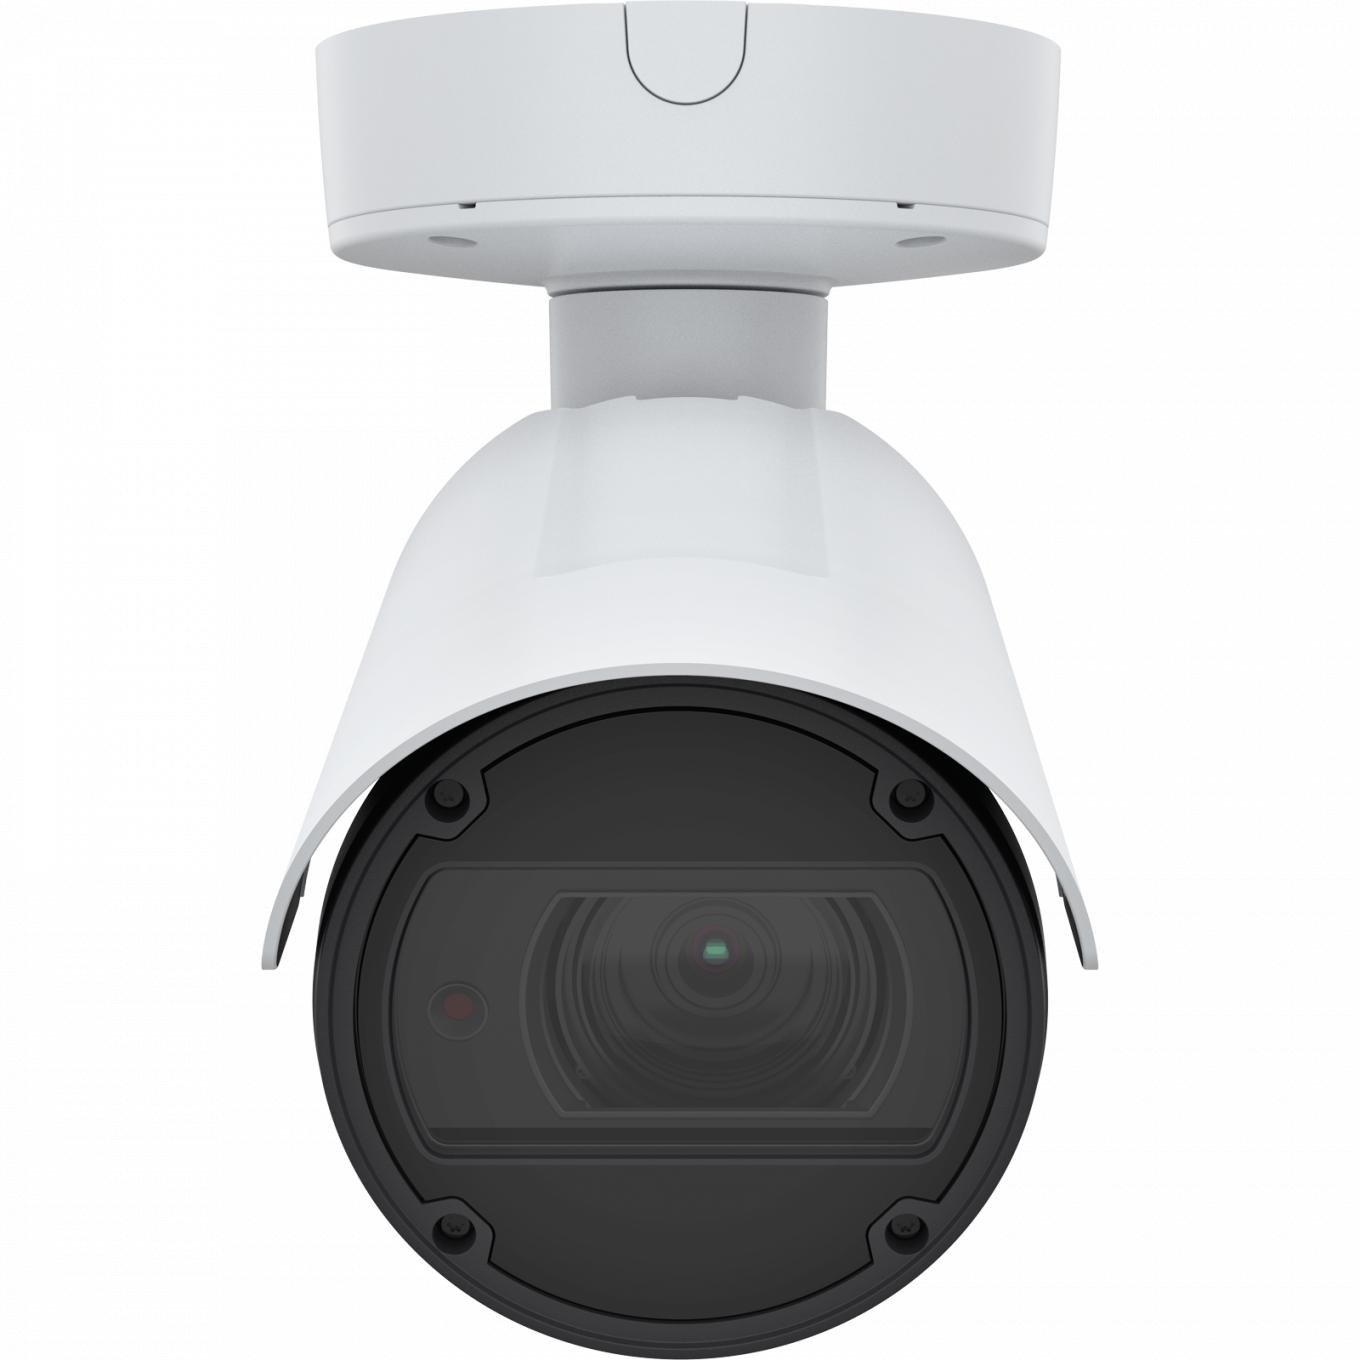 La caméra IP AXIS Q1798-LE dispose de Zipstream et de Lightfinder. Le produit est vu de face.